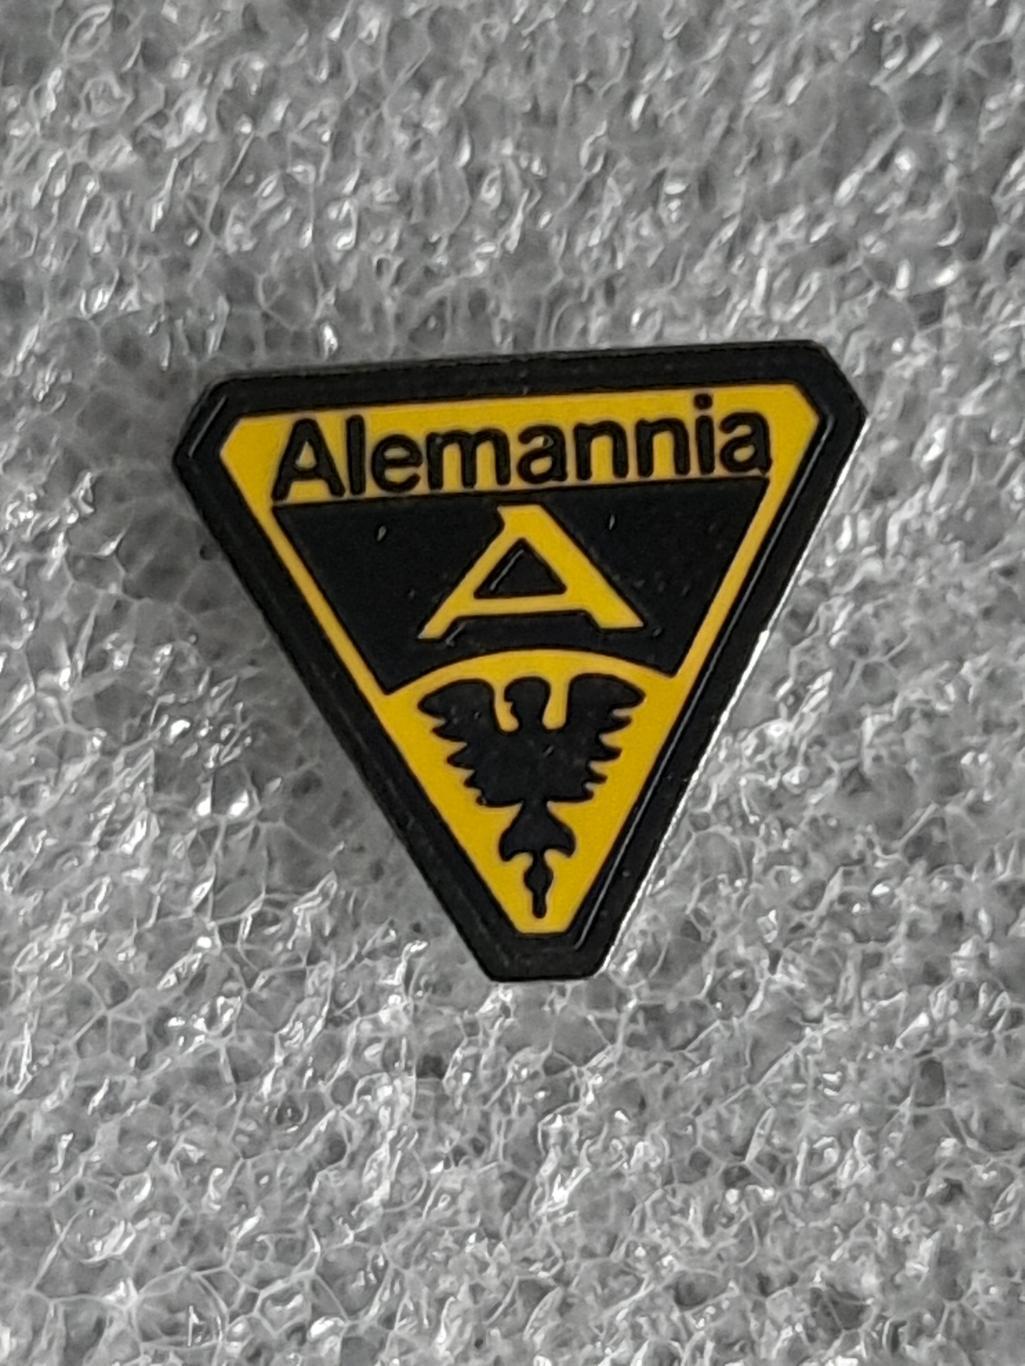 ФК Алемания Ахен (Германия)/ FC Alemannia Aachen, Germany/ официальный